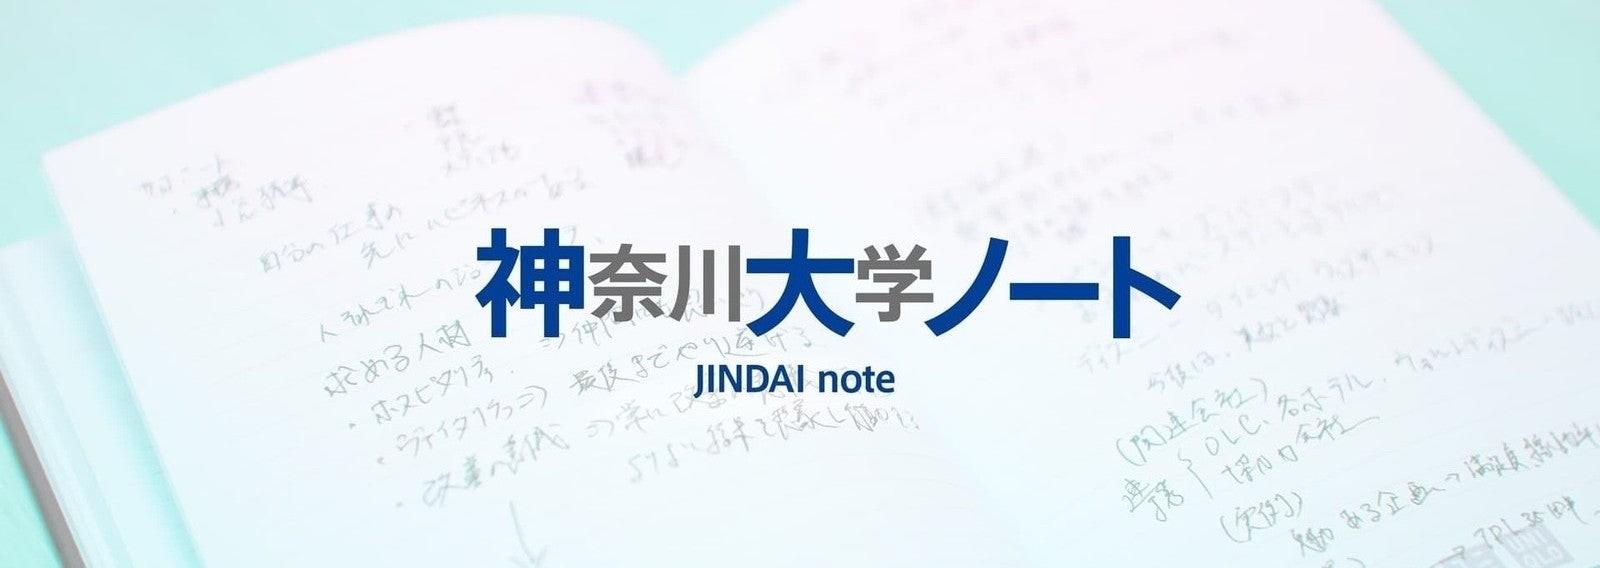 ＜もっと、神奈川大学のことを知ってもらいたい。＞「神奈川大学ノート-JINDAI note-」をスタート！たくさんの「人」が行き交い、新たな可能性が生まれる場に